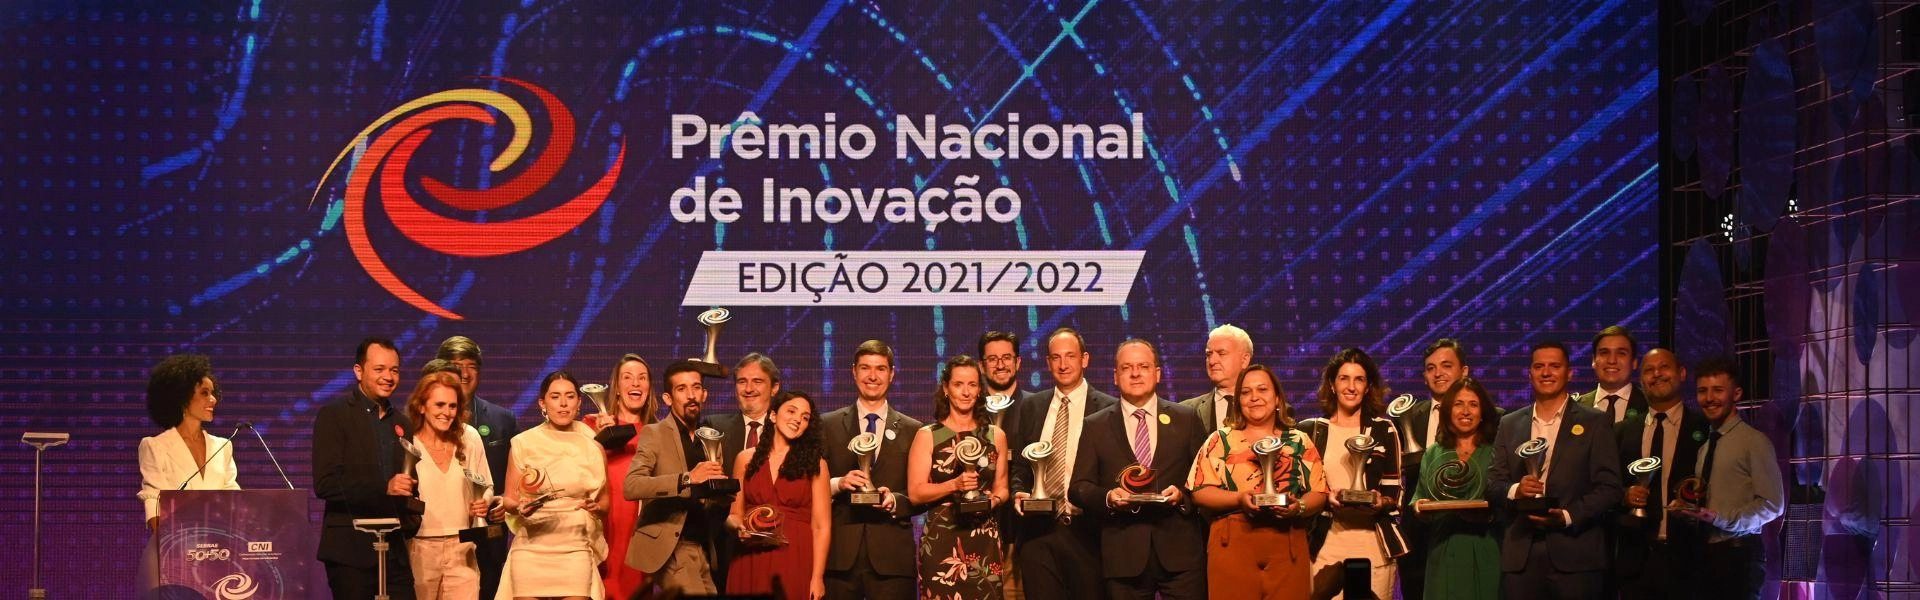 Pessoas no palco do evento Prêmio Nacional de Inovação